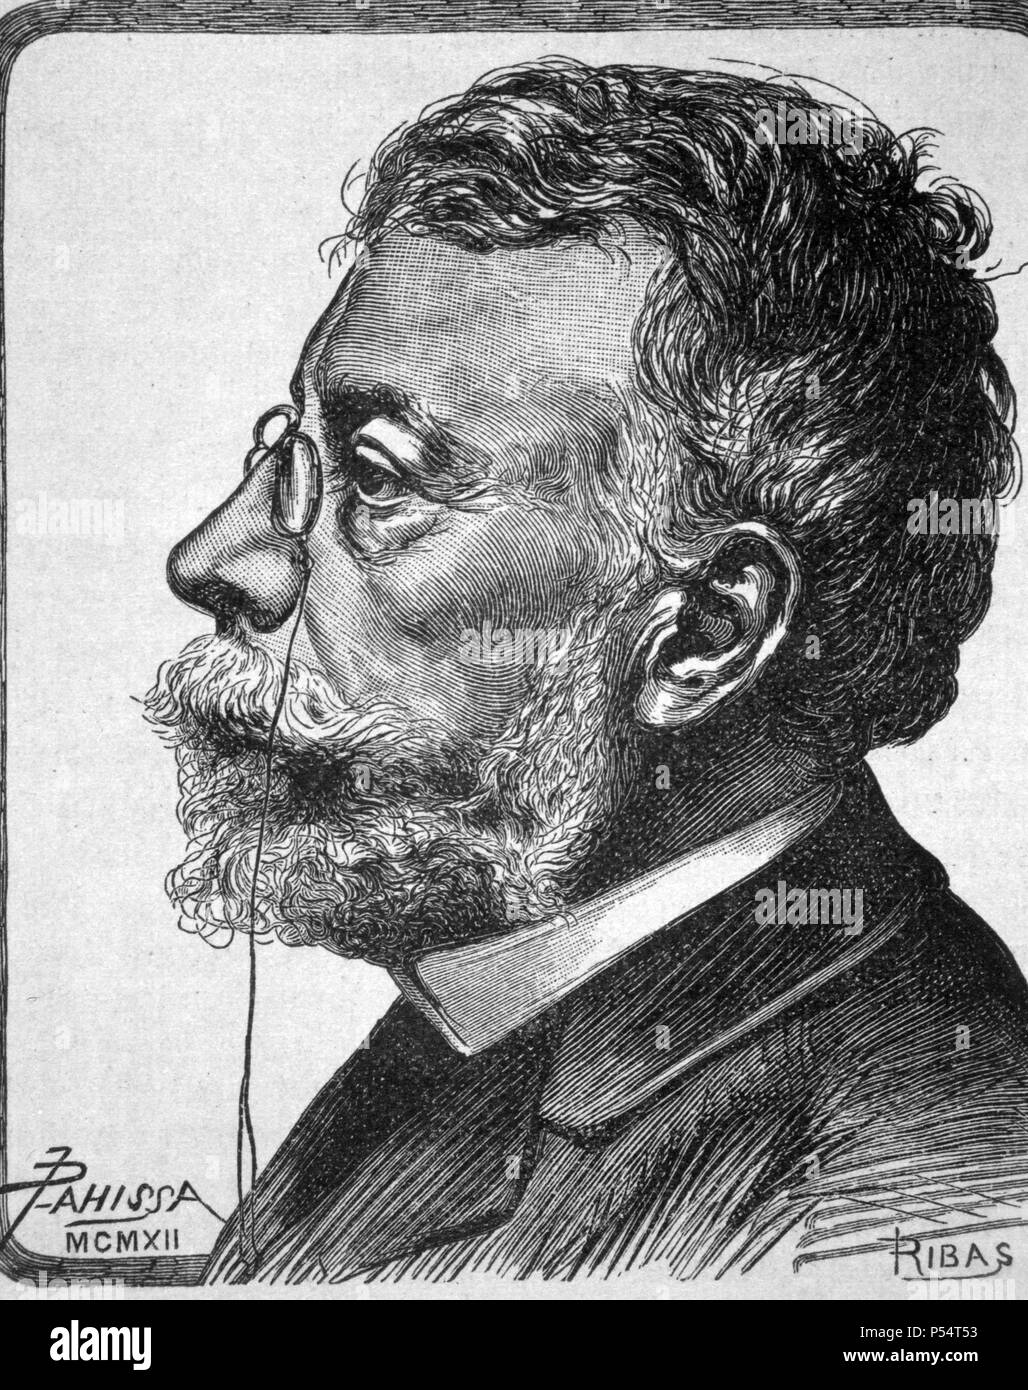 Àngel Guimerà i Jorge (1845-1924), escritor, poeta y dramaturgo español. Grabado de Pahissa, año 1912. Stock Photo